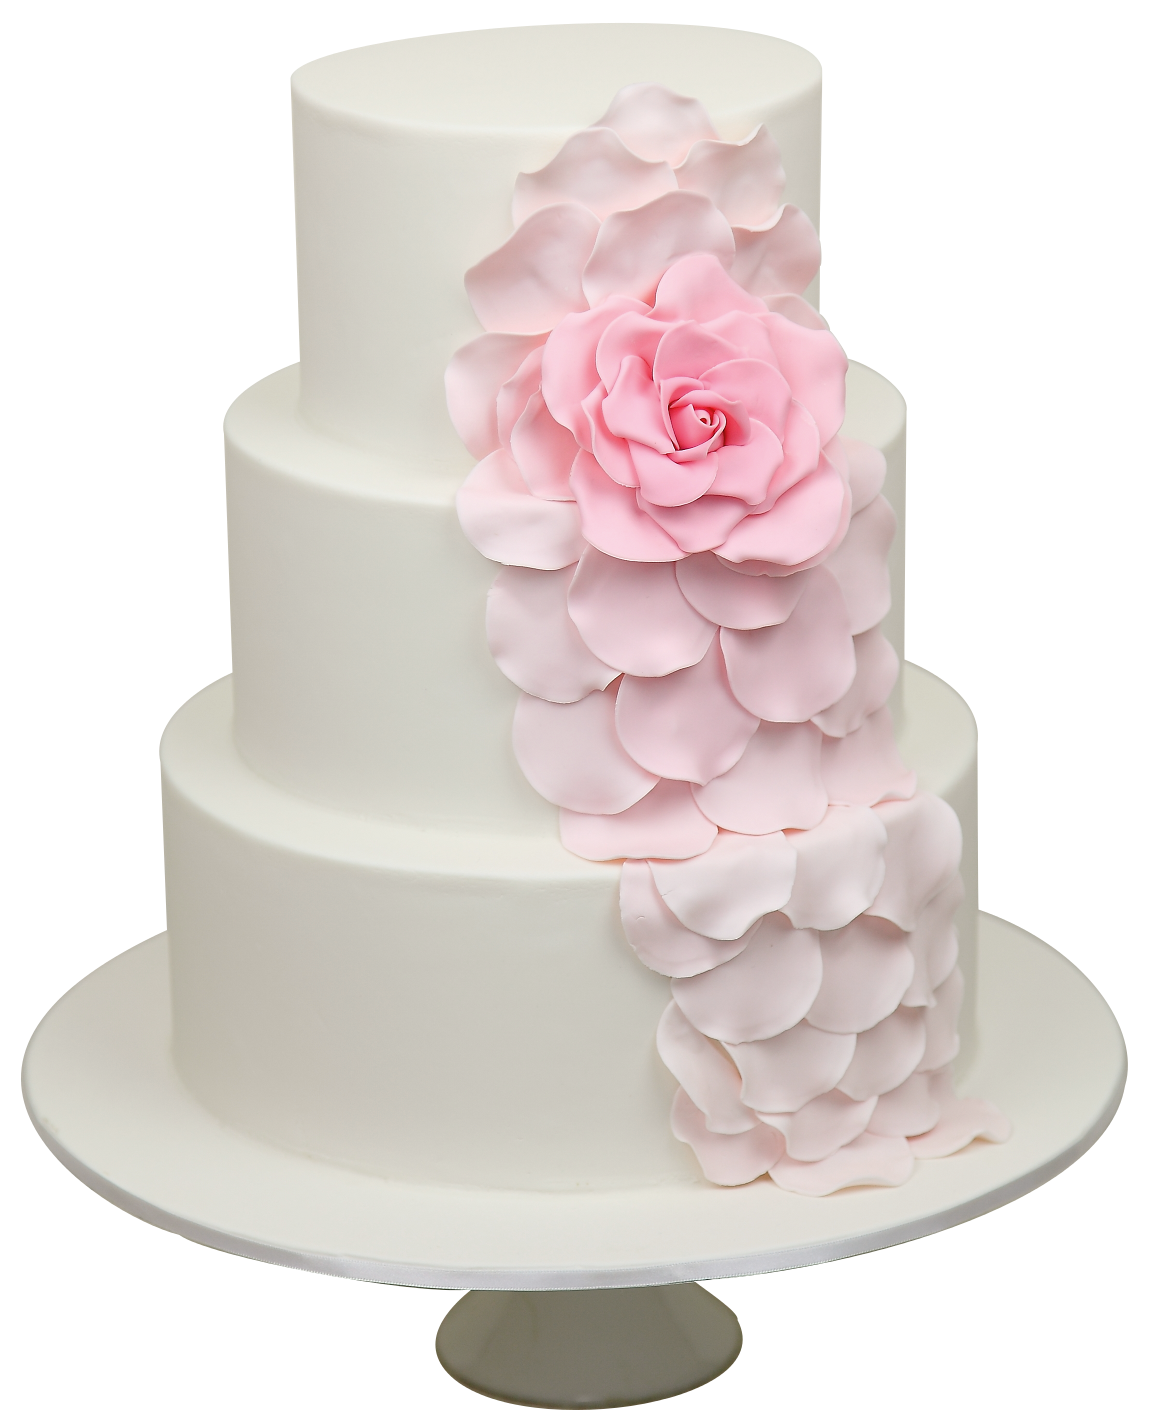 Wedding Cake Free Download Png - Wedding Cake, Transparent background PNG HD thumbnail